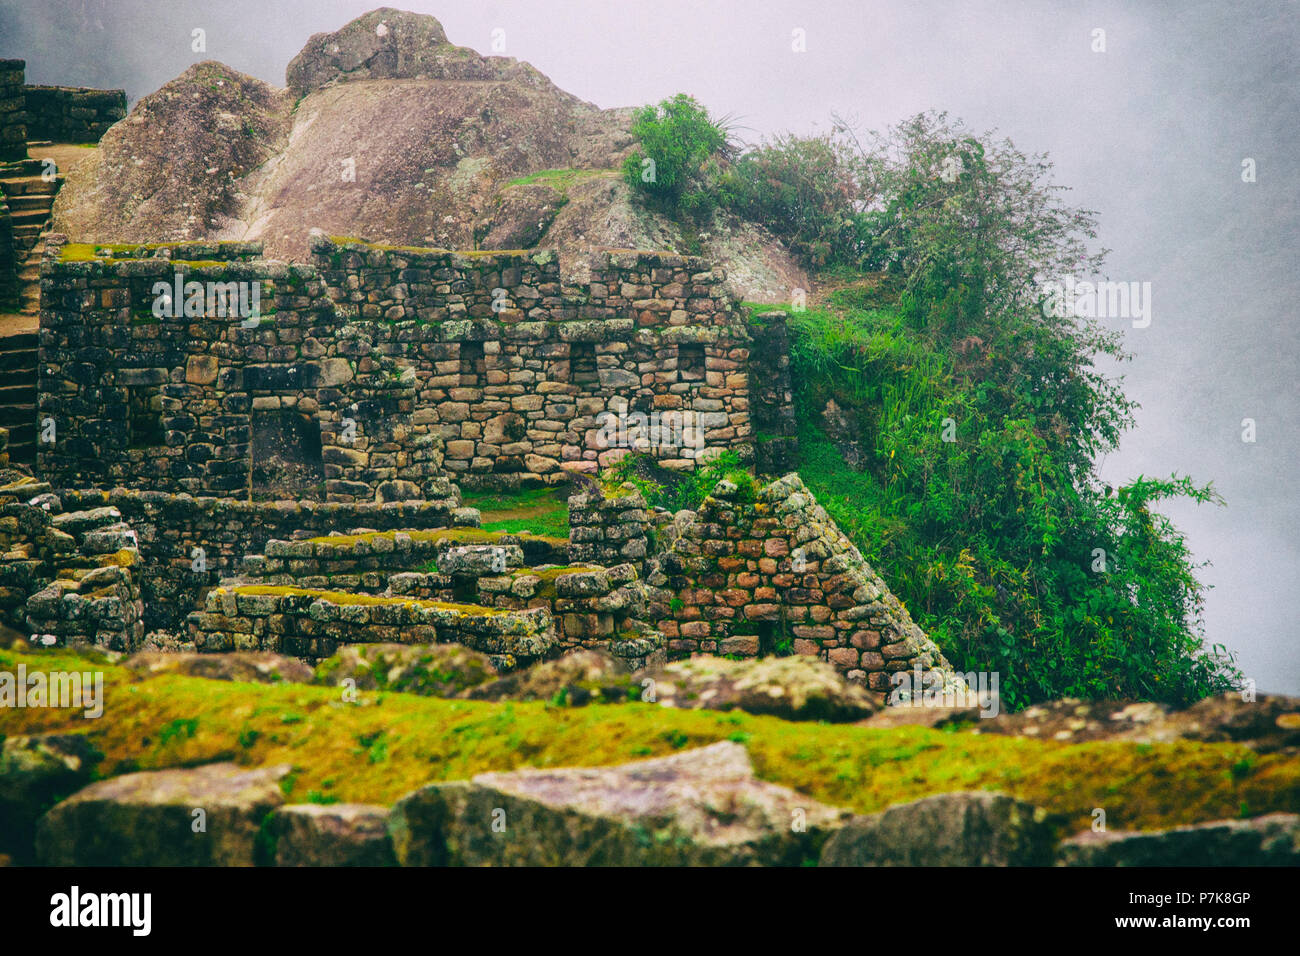 Nuvole dietro un enorme pietra e rovine storiche della città perduta nella natura del Machu Picchu. Il Perù. N. persone. Foto Stock